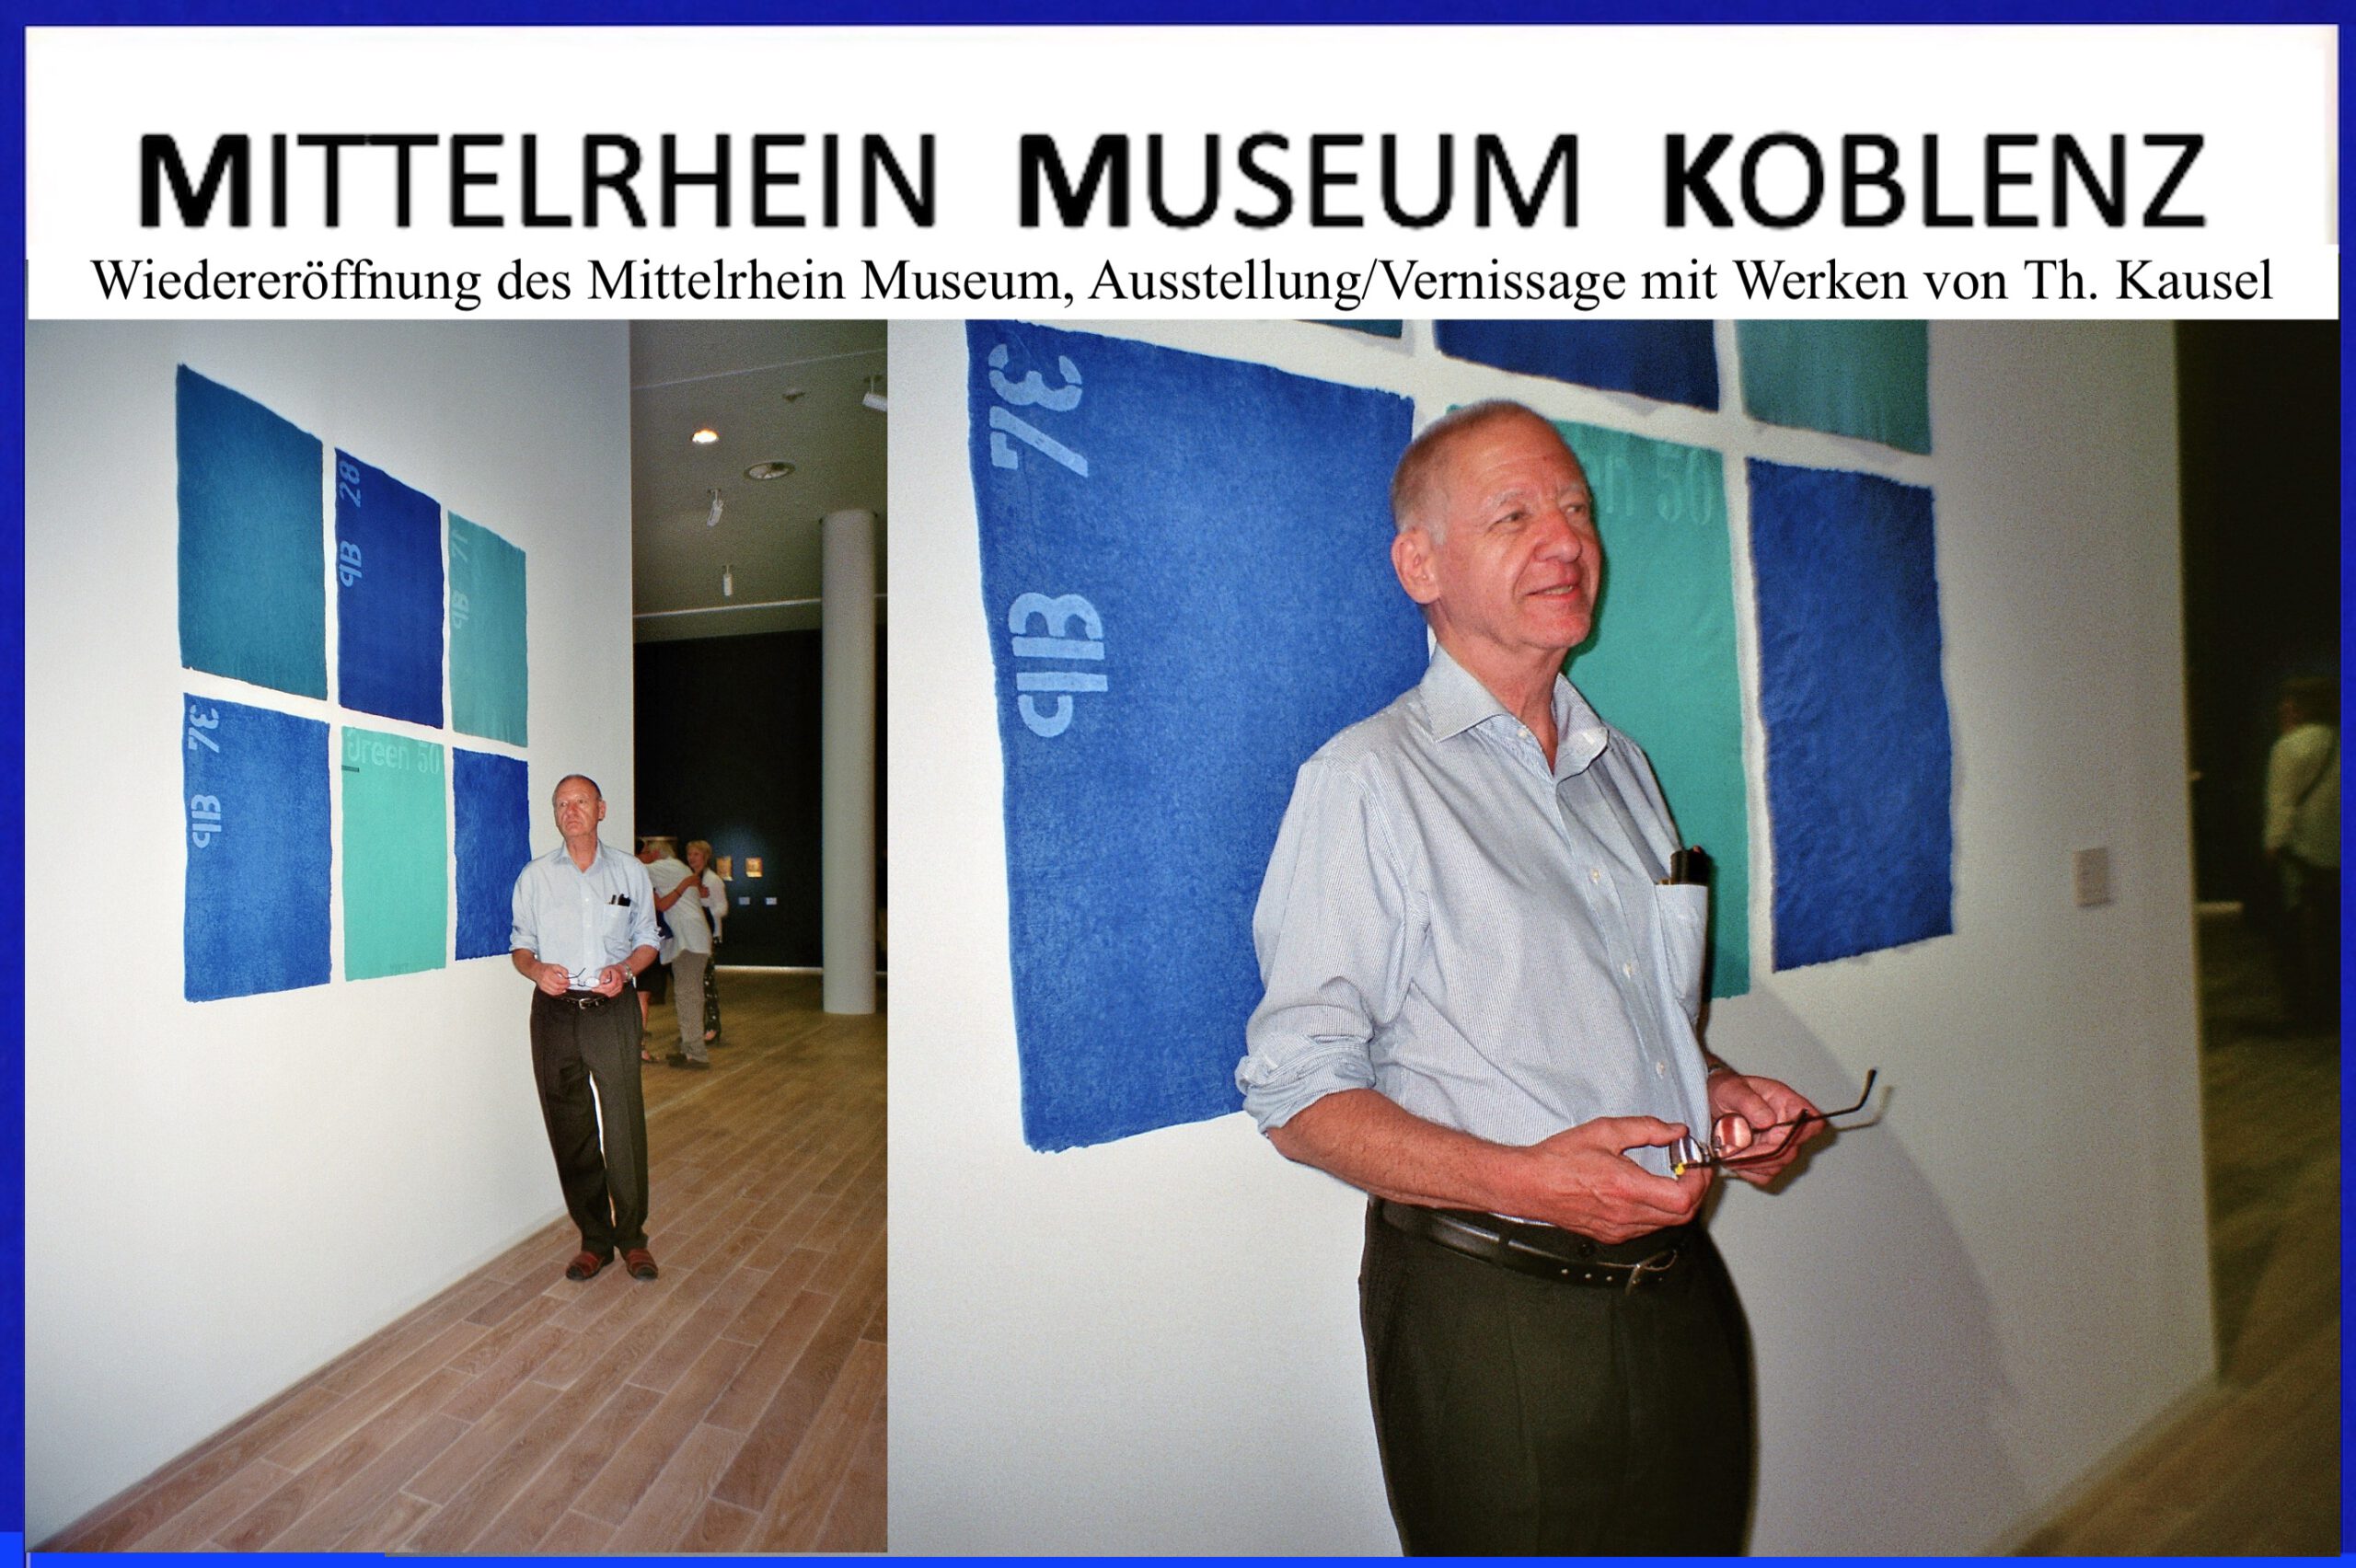 Mittelrhein Museum Koblenz